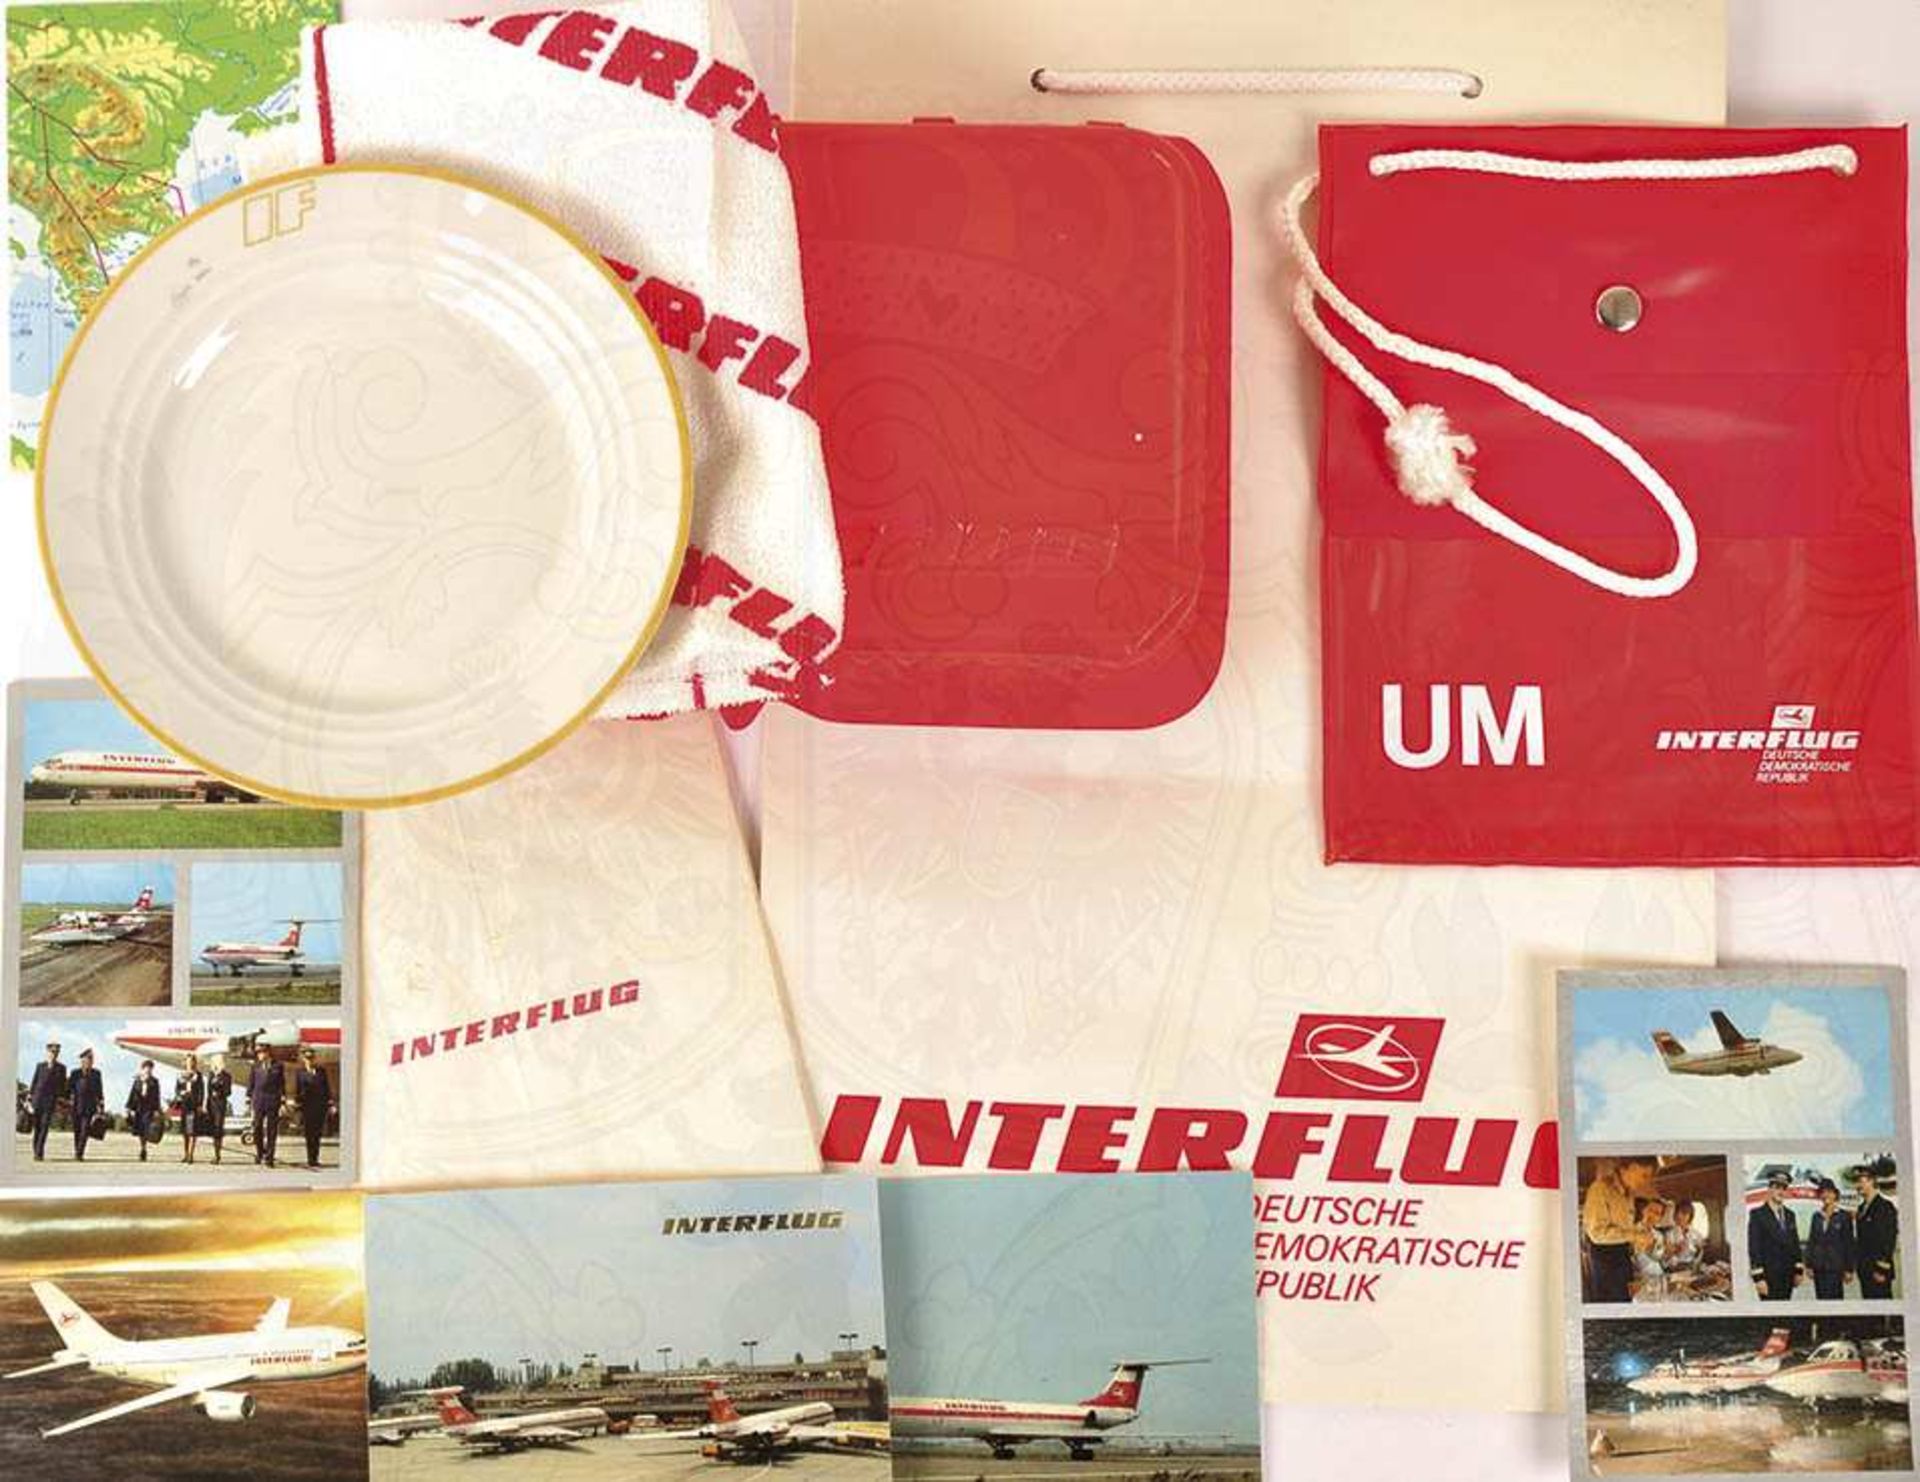 INTERFLUG, EINE NICHT MEHR EXISTIERENDE AIRLINE: Bordhandbuch mit weiss/rotem IF-Emblem;